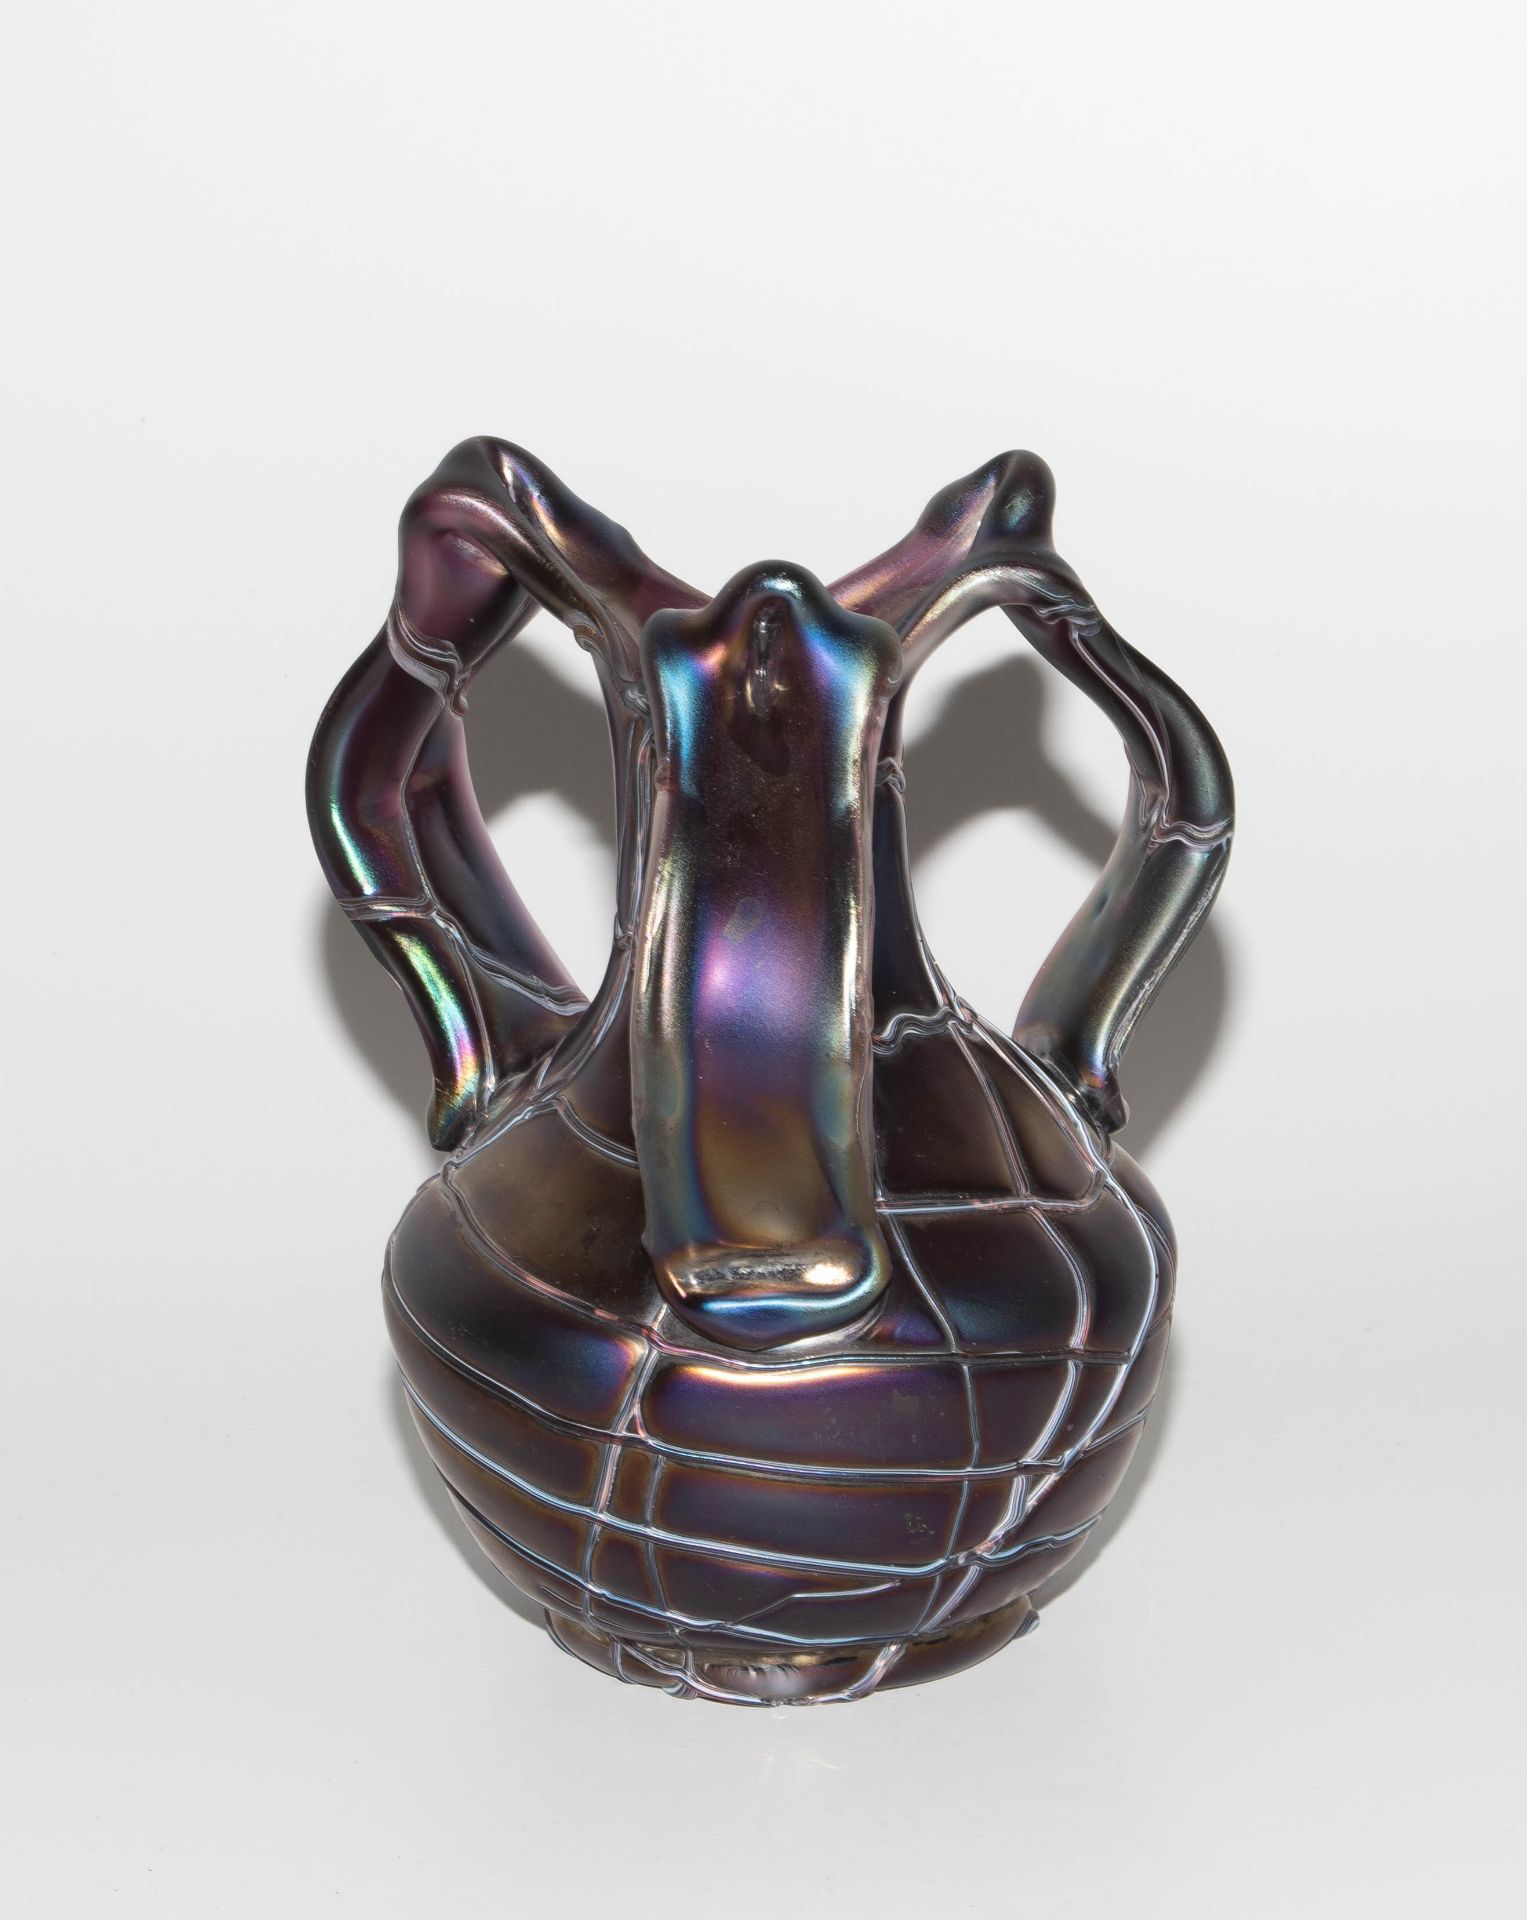 Pallme-König & Habel (zugeschrieben), Vase "Patras" - Image 4 of 7